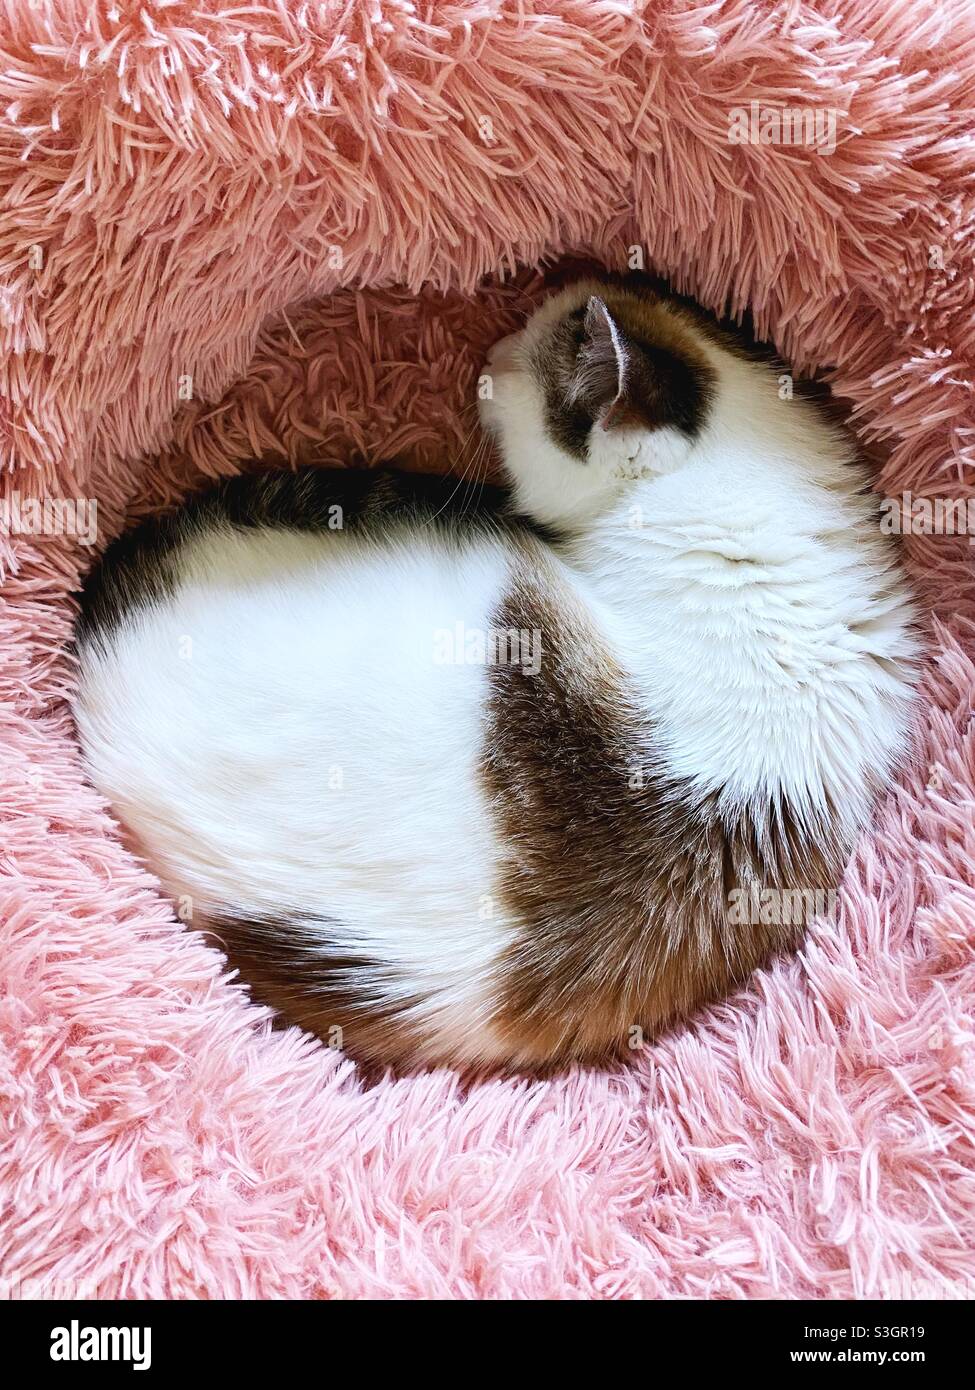 Eine weiße und braune Katze rollte sich in einem rosafarbenen, flauschigen Bett zusammen. Stockfoto